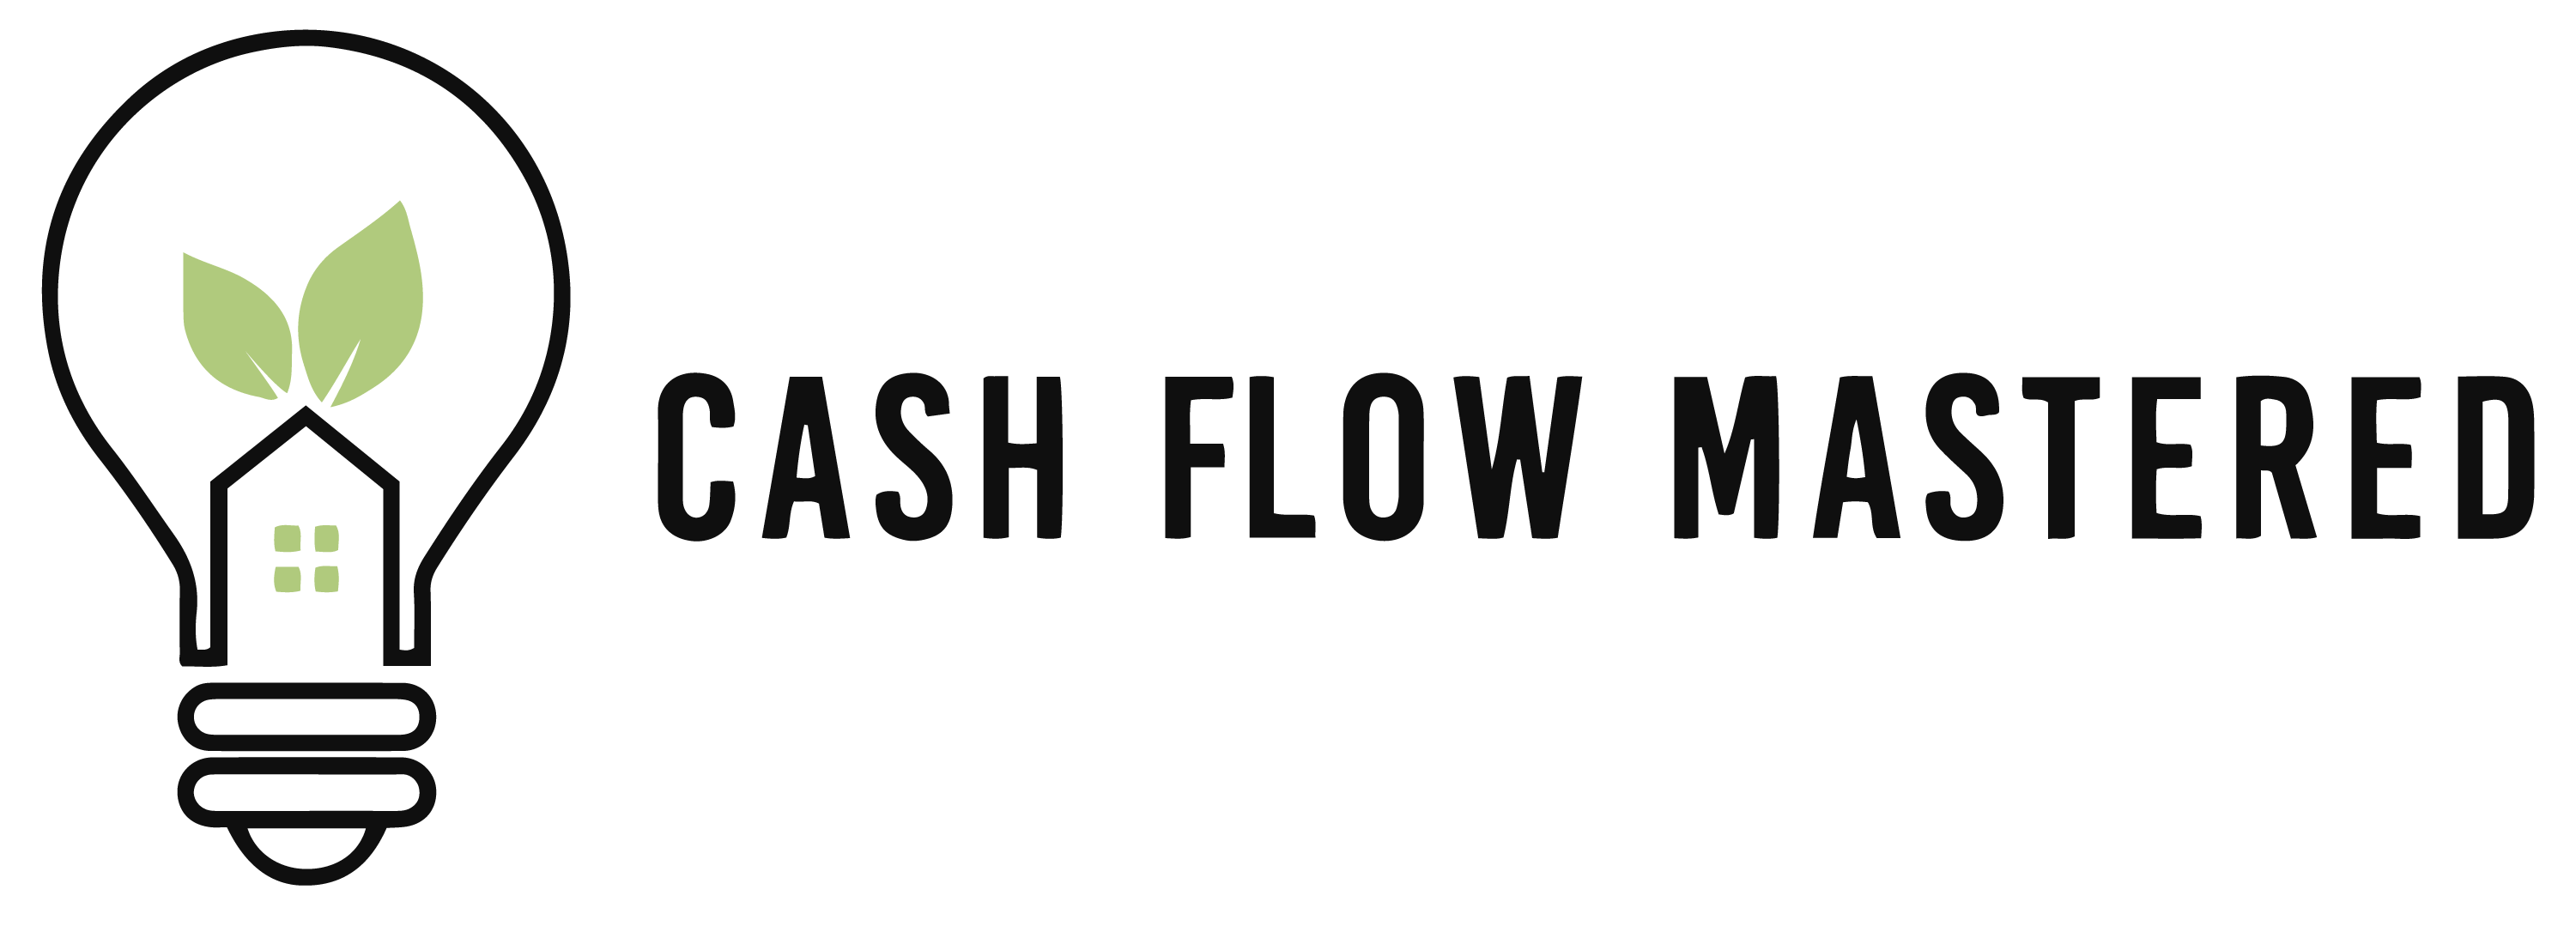 Cash Flow Mastered